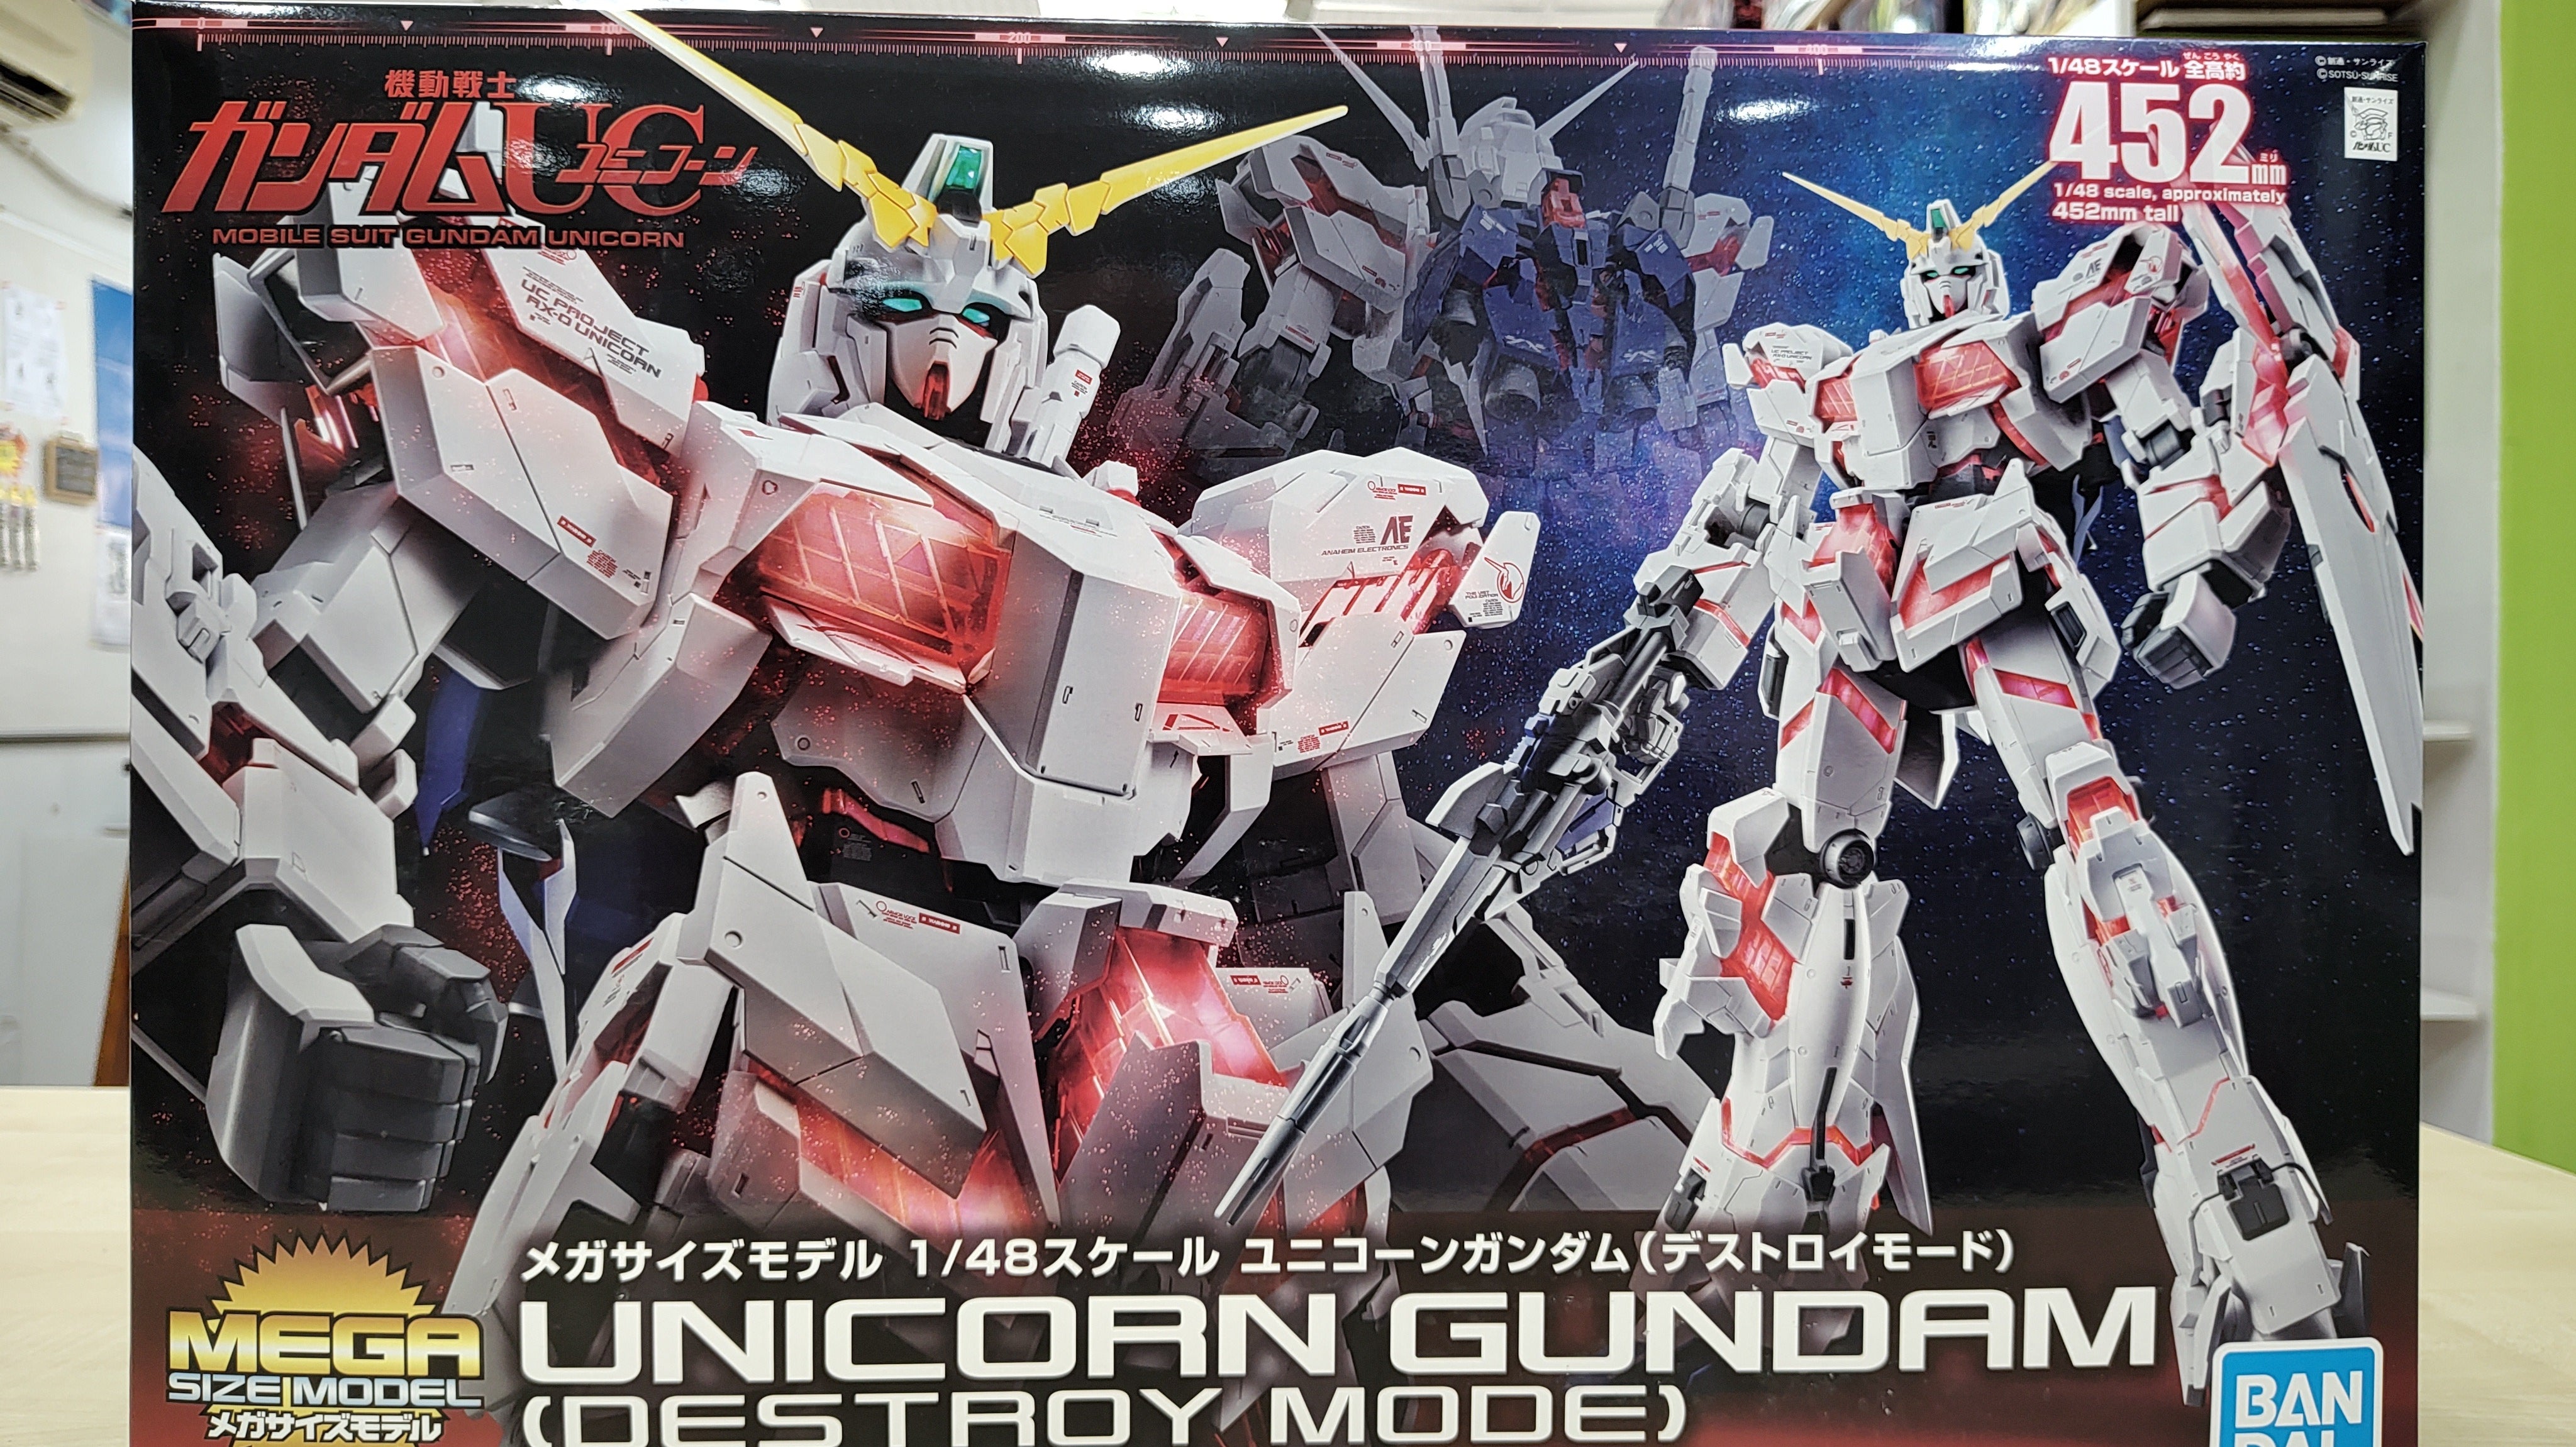 1/48 Mega Size Unicorn Gundam